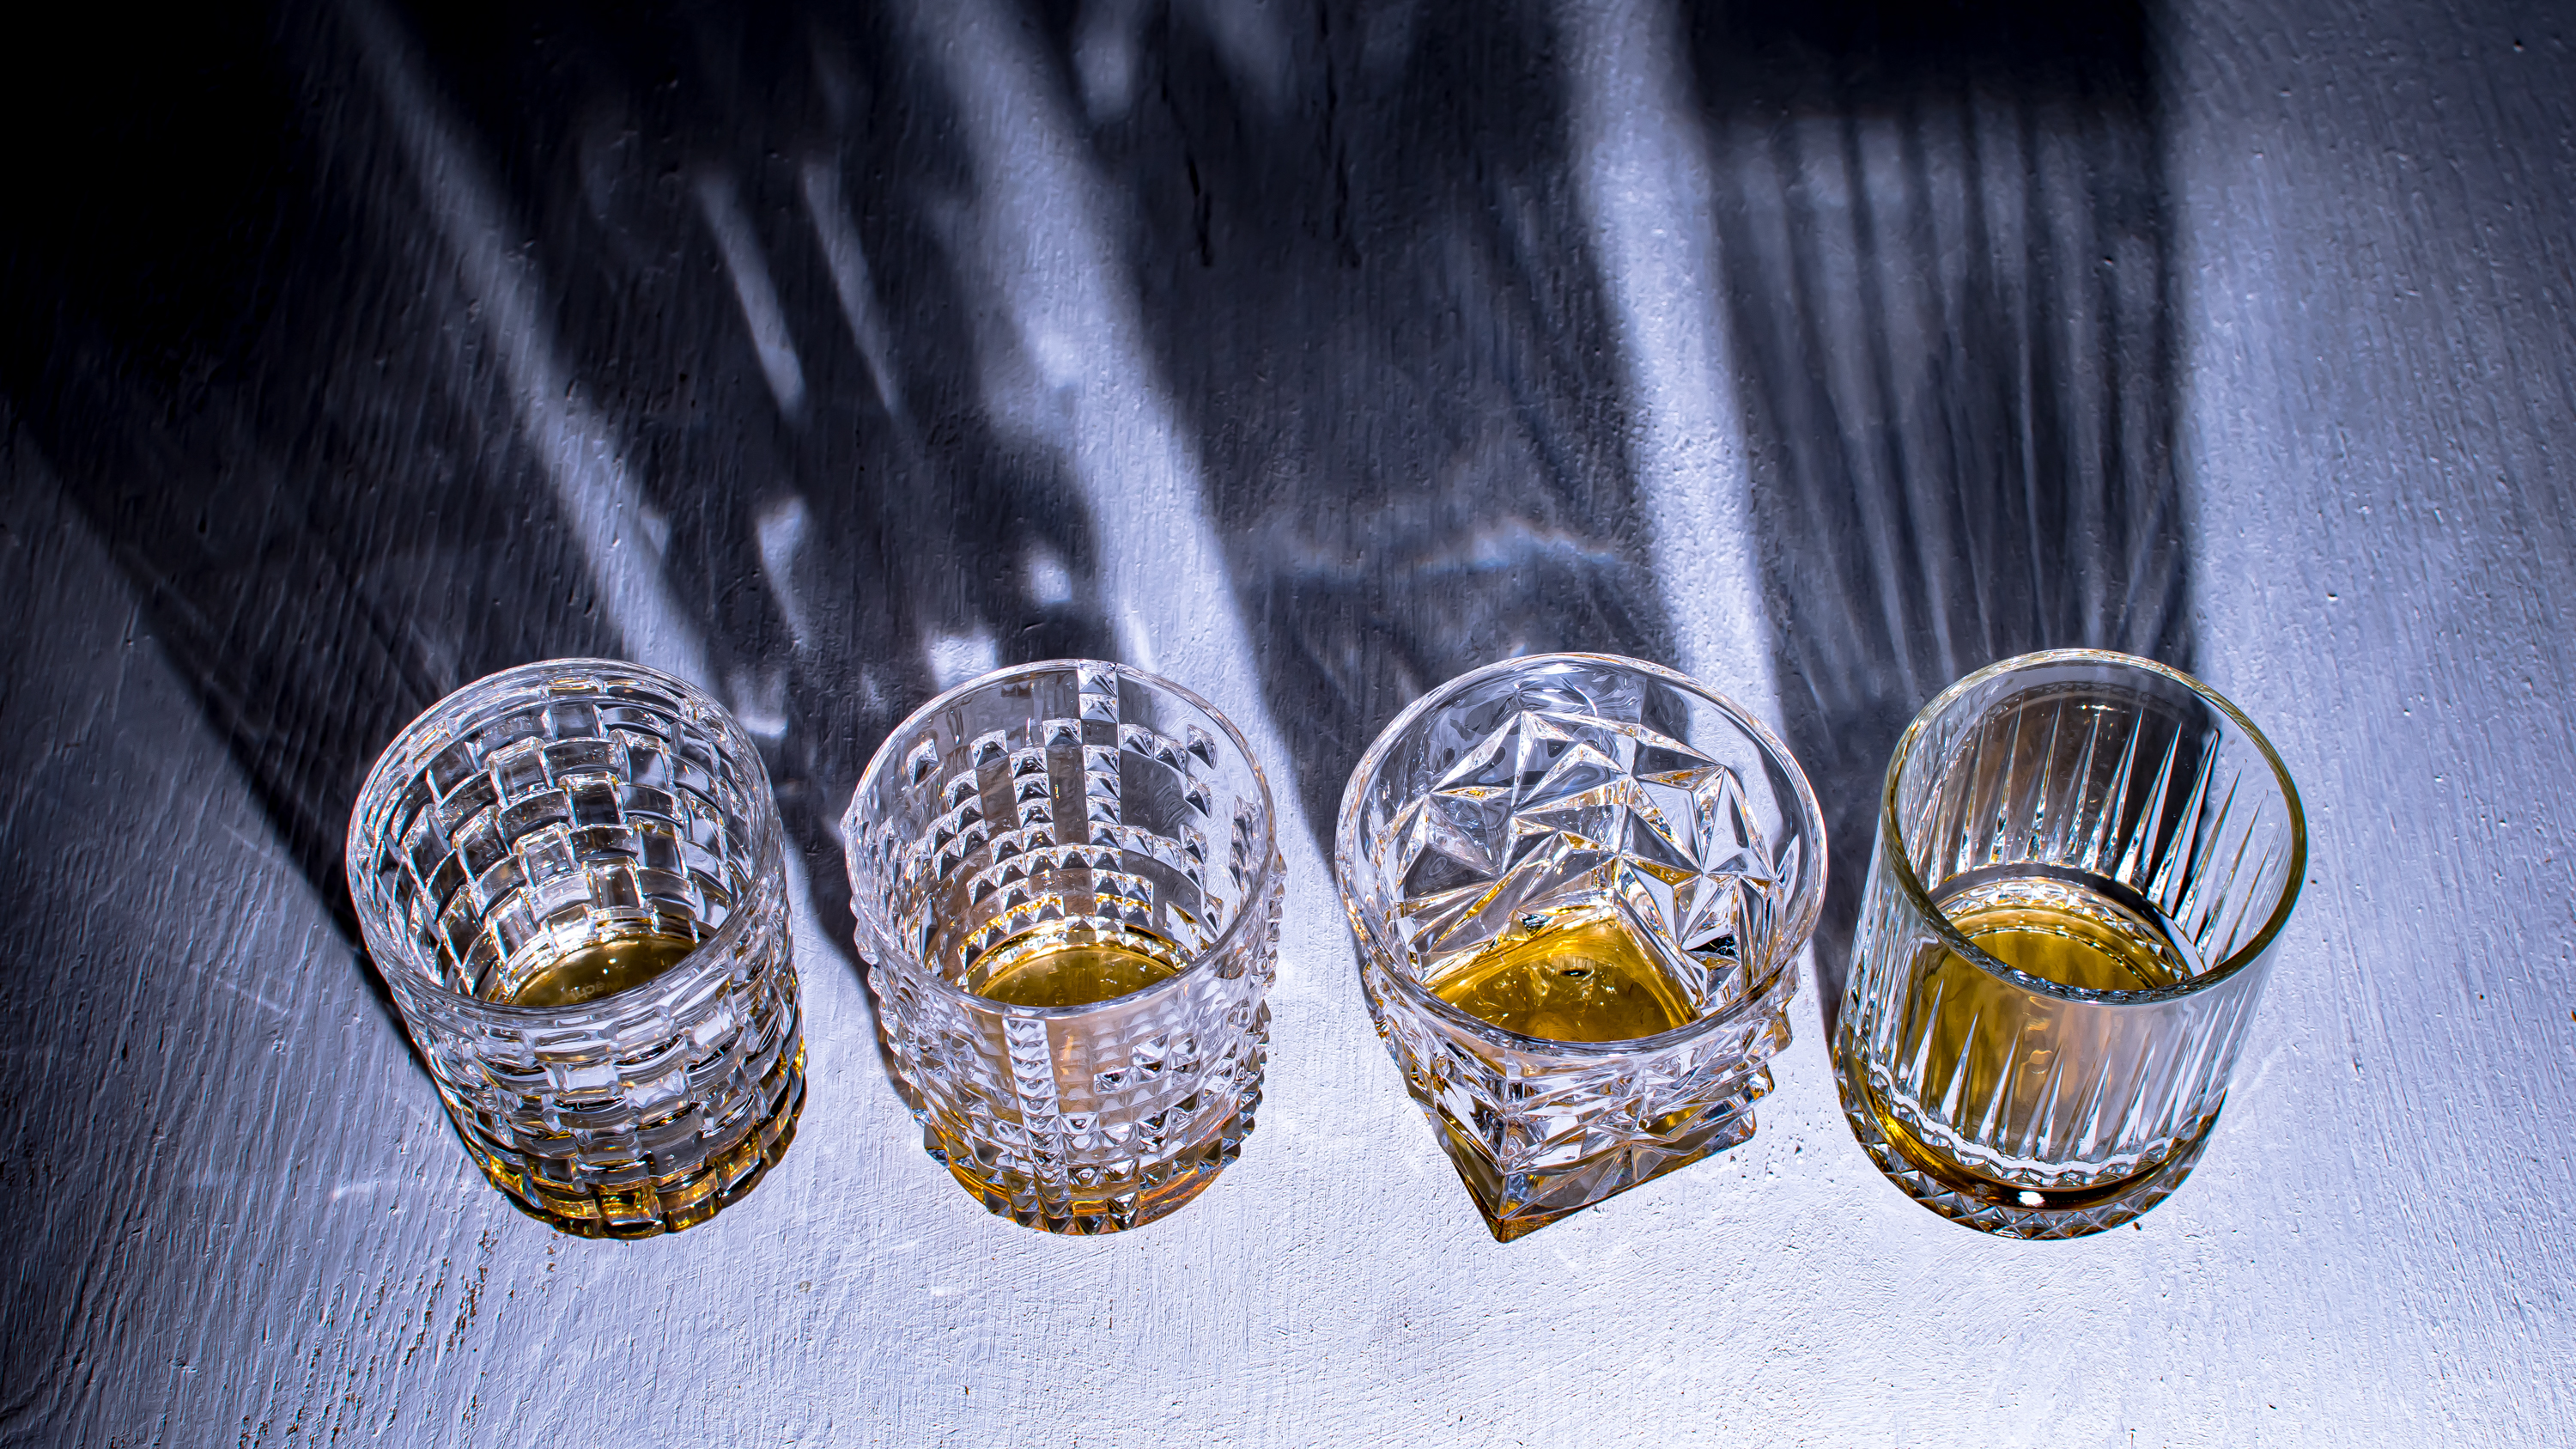 Die High West Whiskeys in Tumblern, weil American Whiskey - aber keine Sorge, wir haben dann doch in Nosing-Gläsern verkostet.